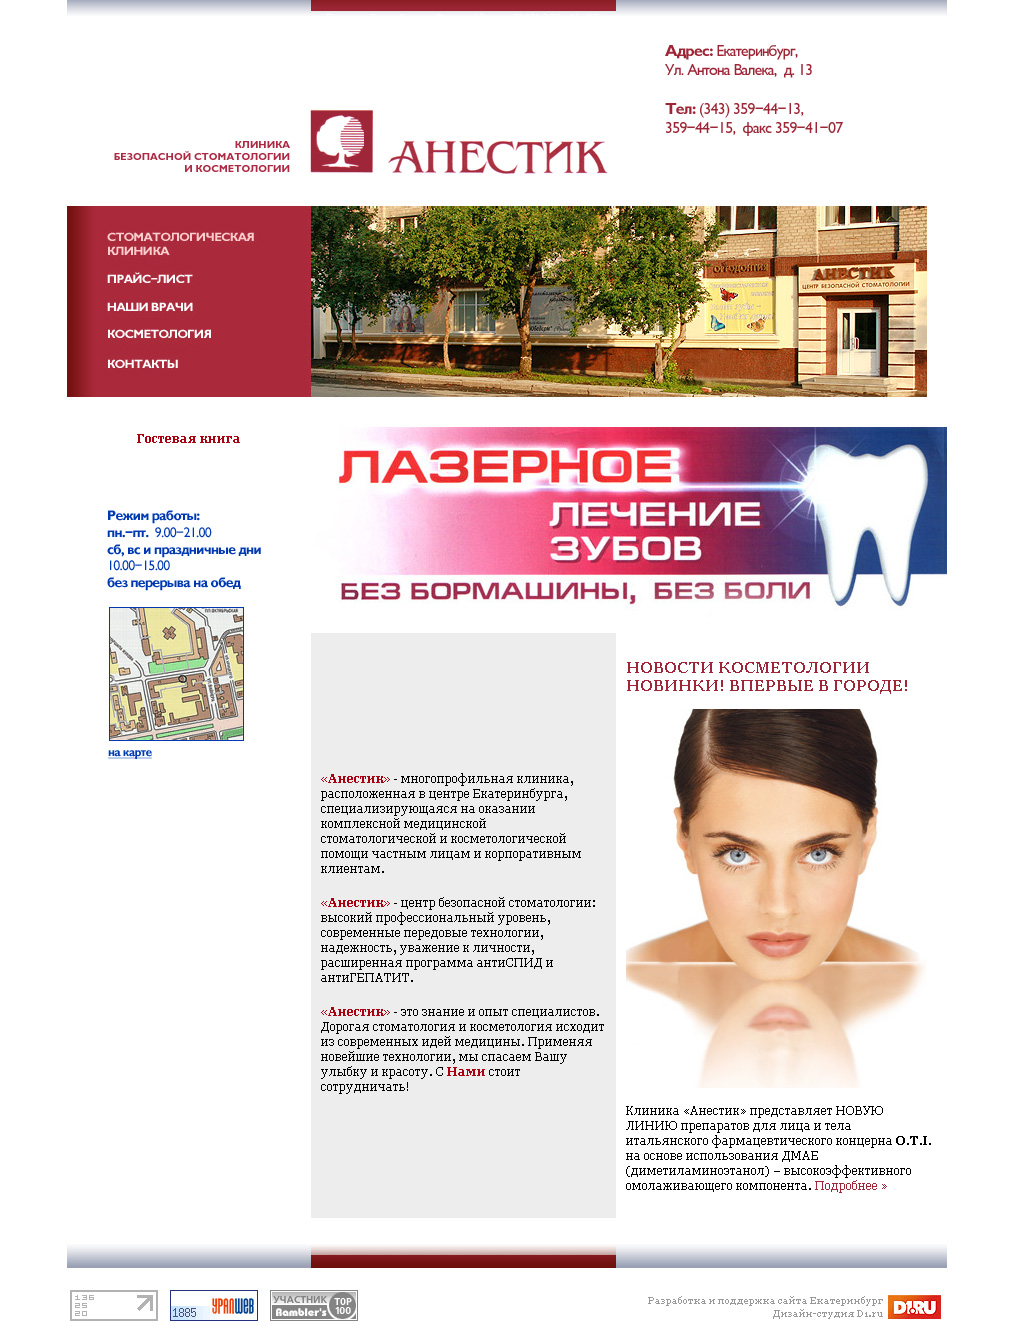 Анестик - Клиника безопасной стоматологии и косметологии